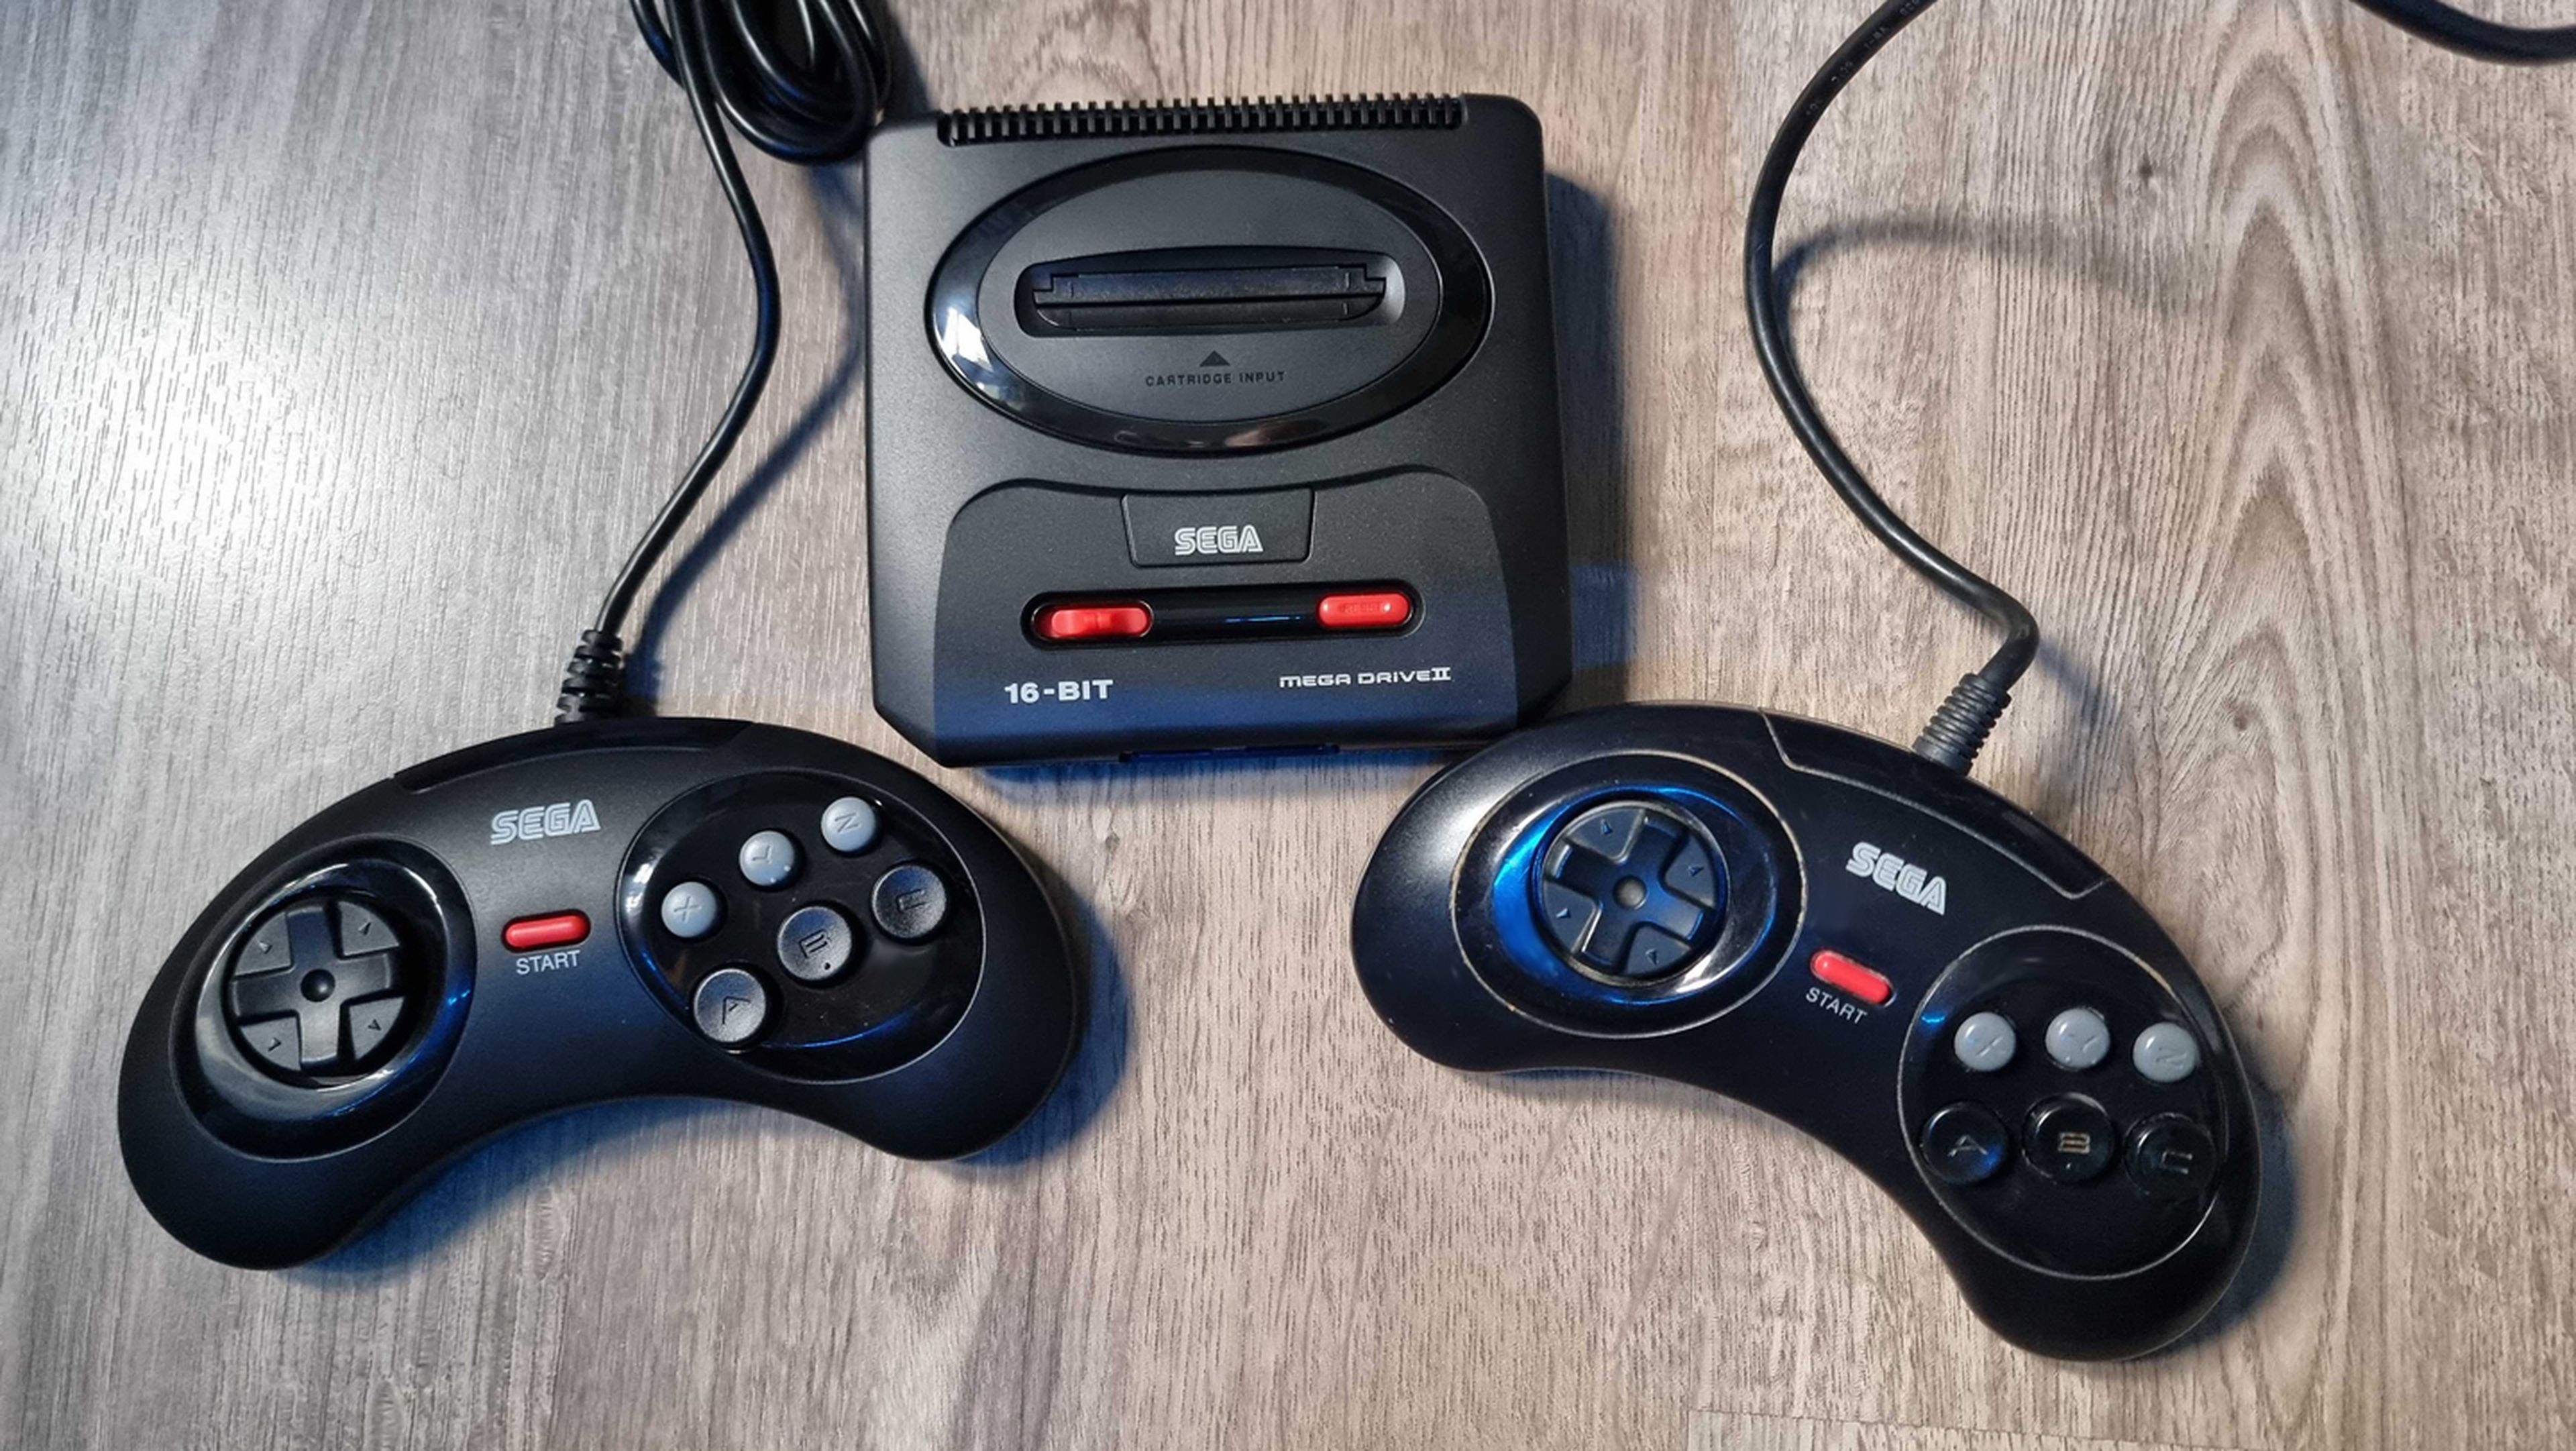 A la izquierda, el mando de Mega Drive Mini 2. A la derecha, el mando original de Mega Drive 2